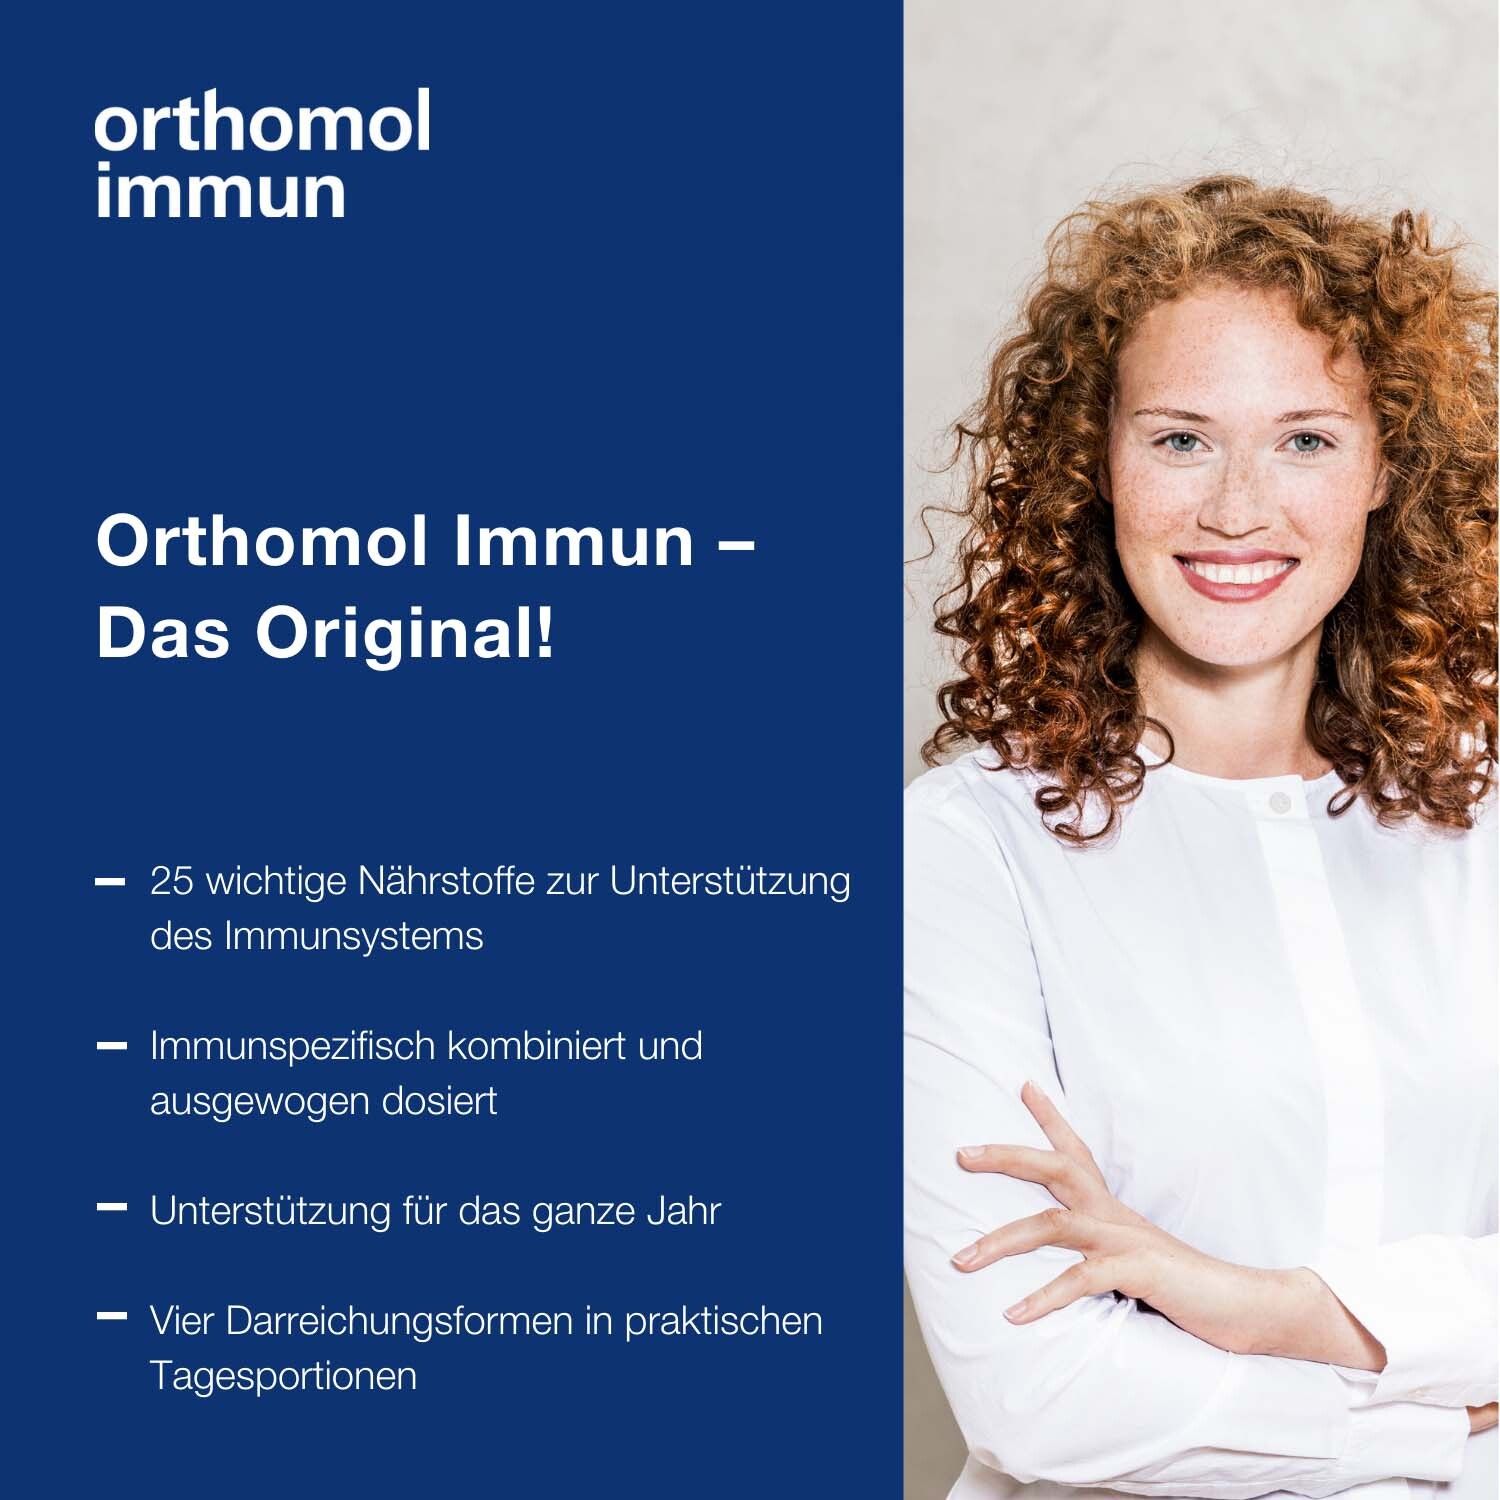 Orthomol Immun - Mikronährstoffe zur Unterstützung des Immunsystems - mit Vitamin C, Vitamin D und Zink - Direktgranulat Orangen-Geschmack